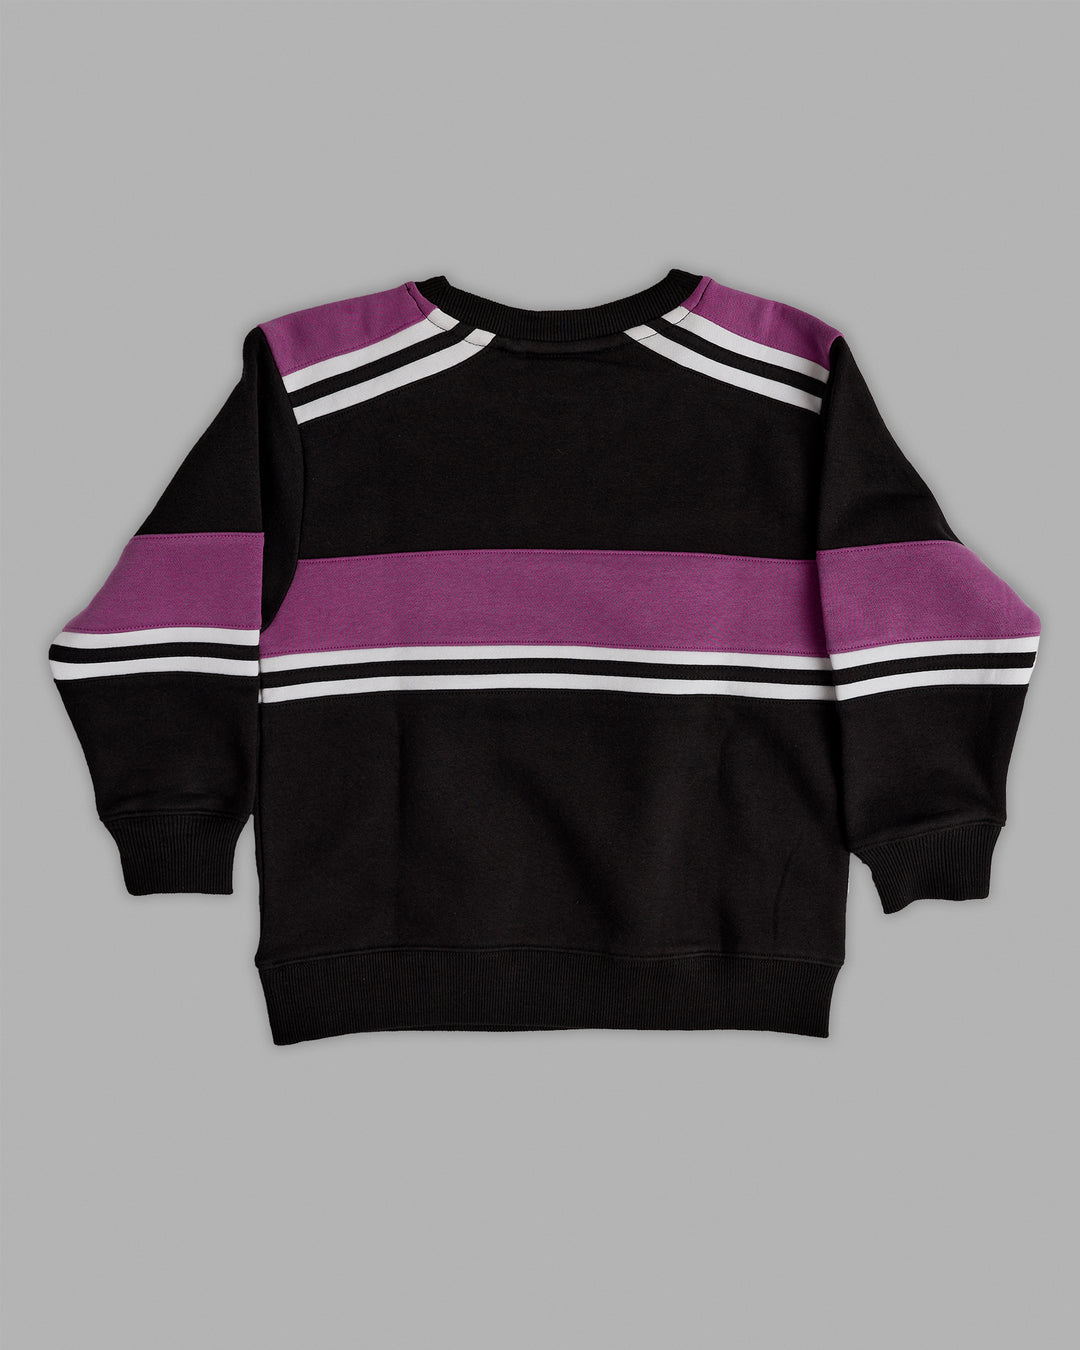 Kids A-Team Sweater - Black-Hyper Violet